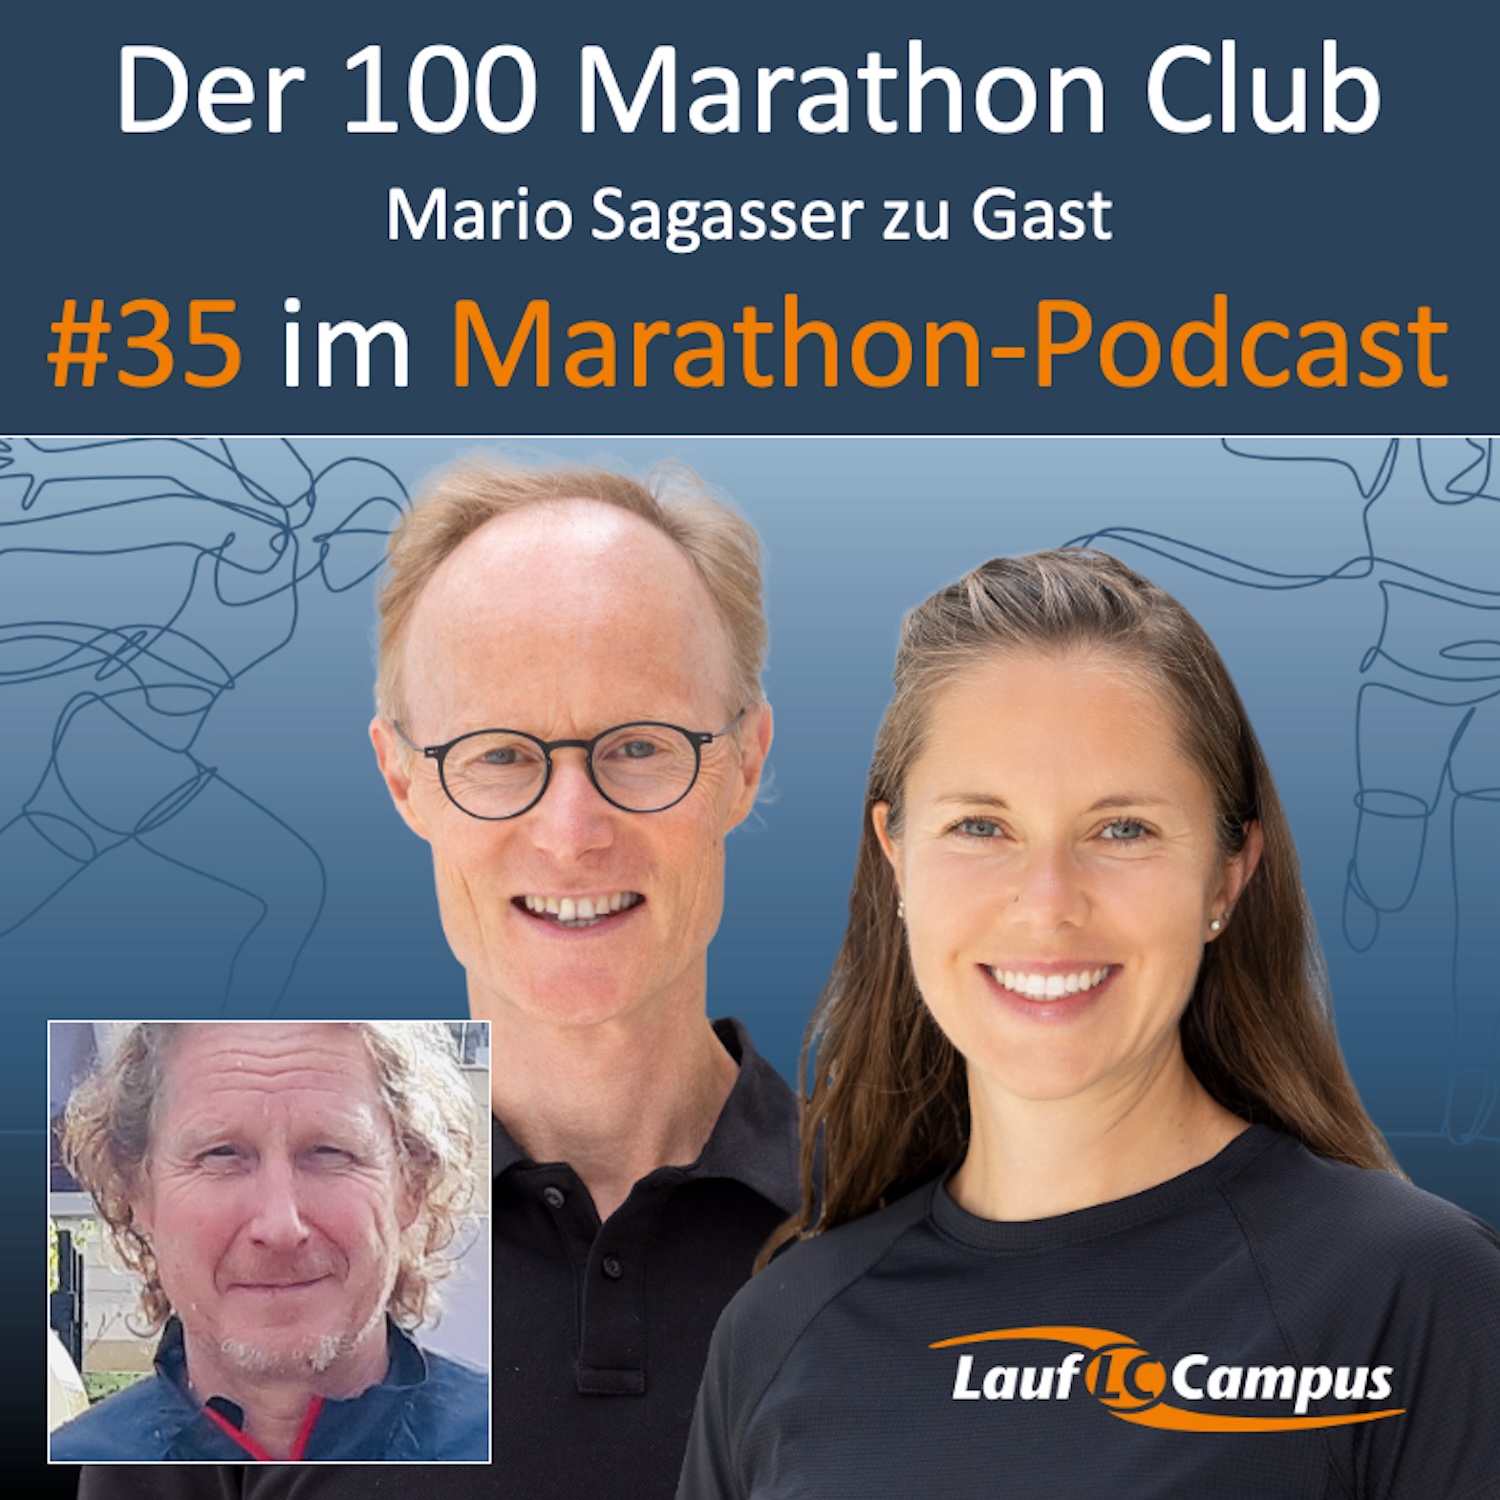 Der 100 Marathon Club